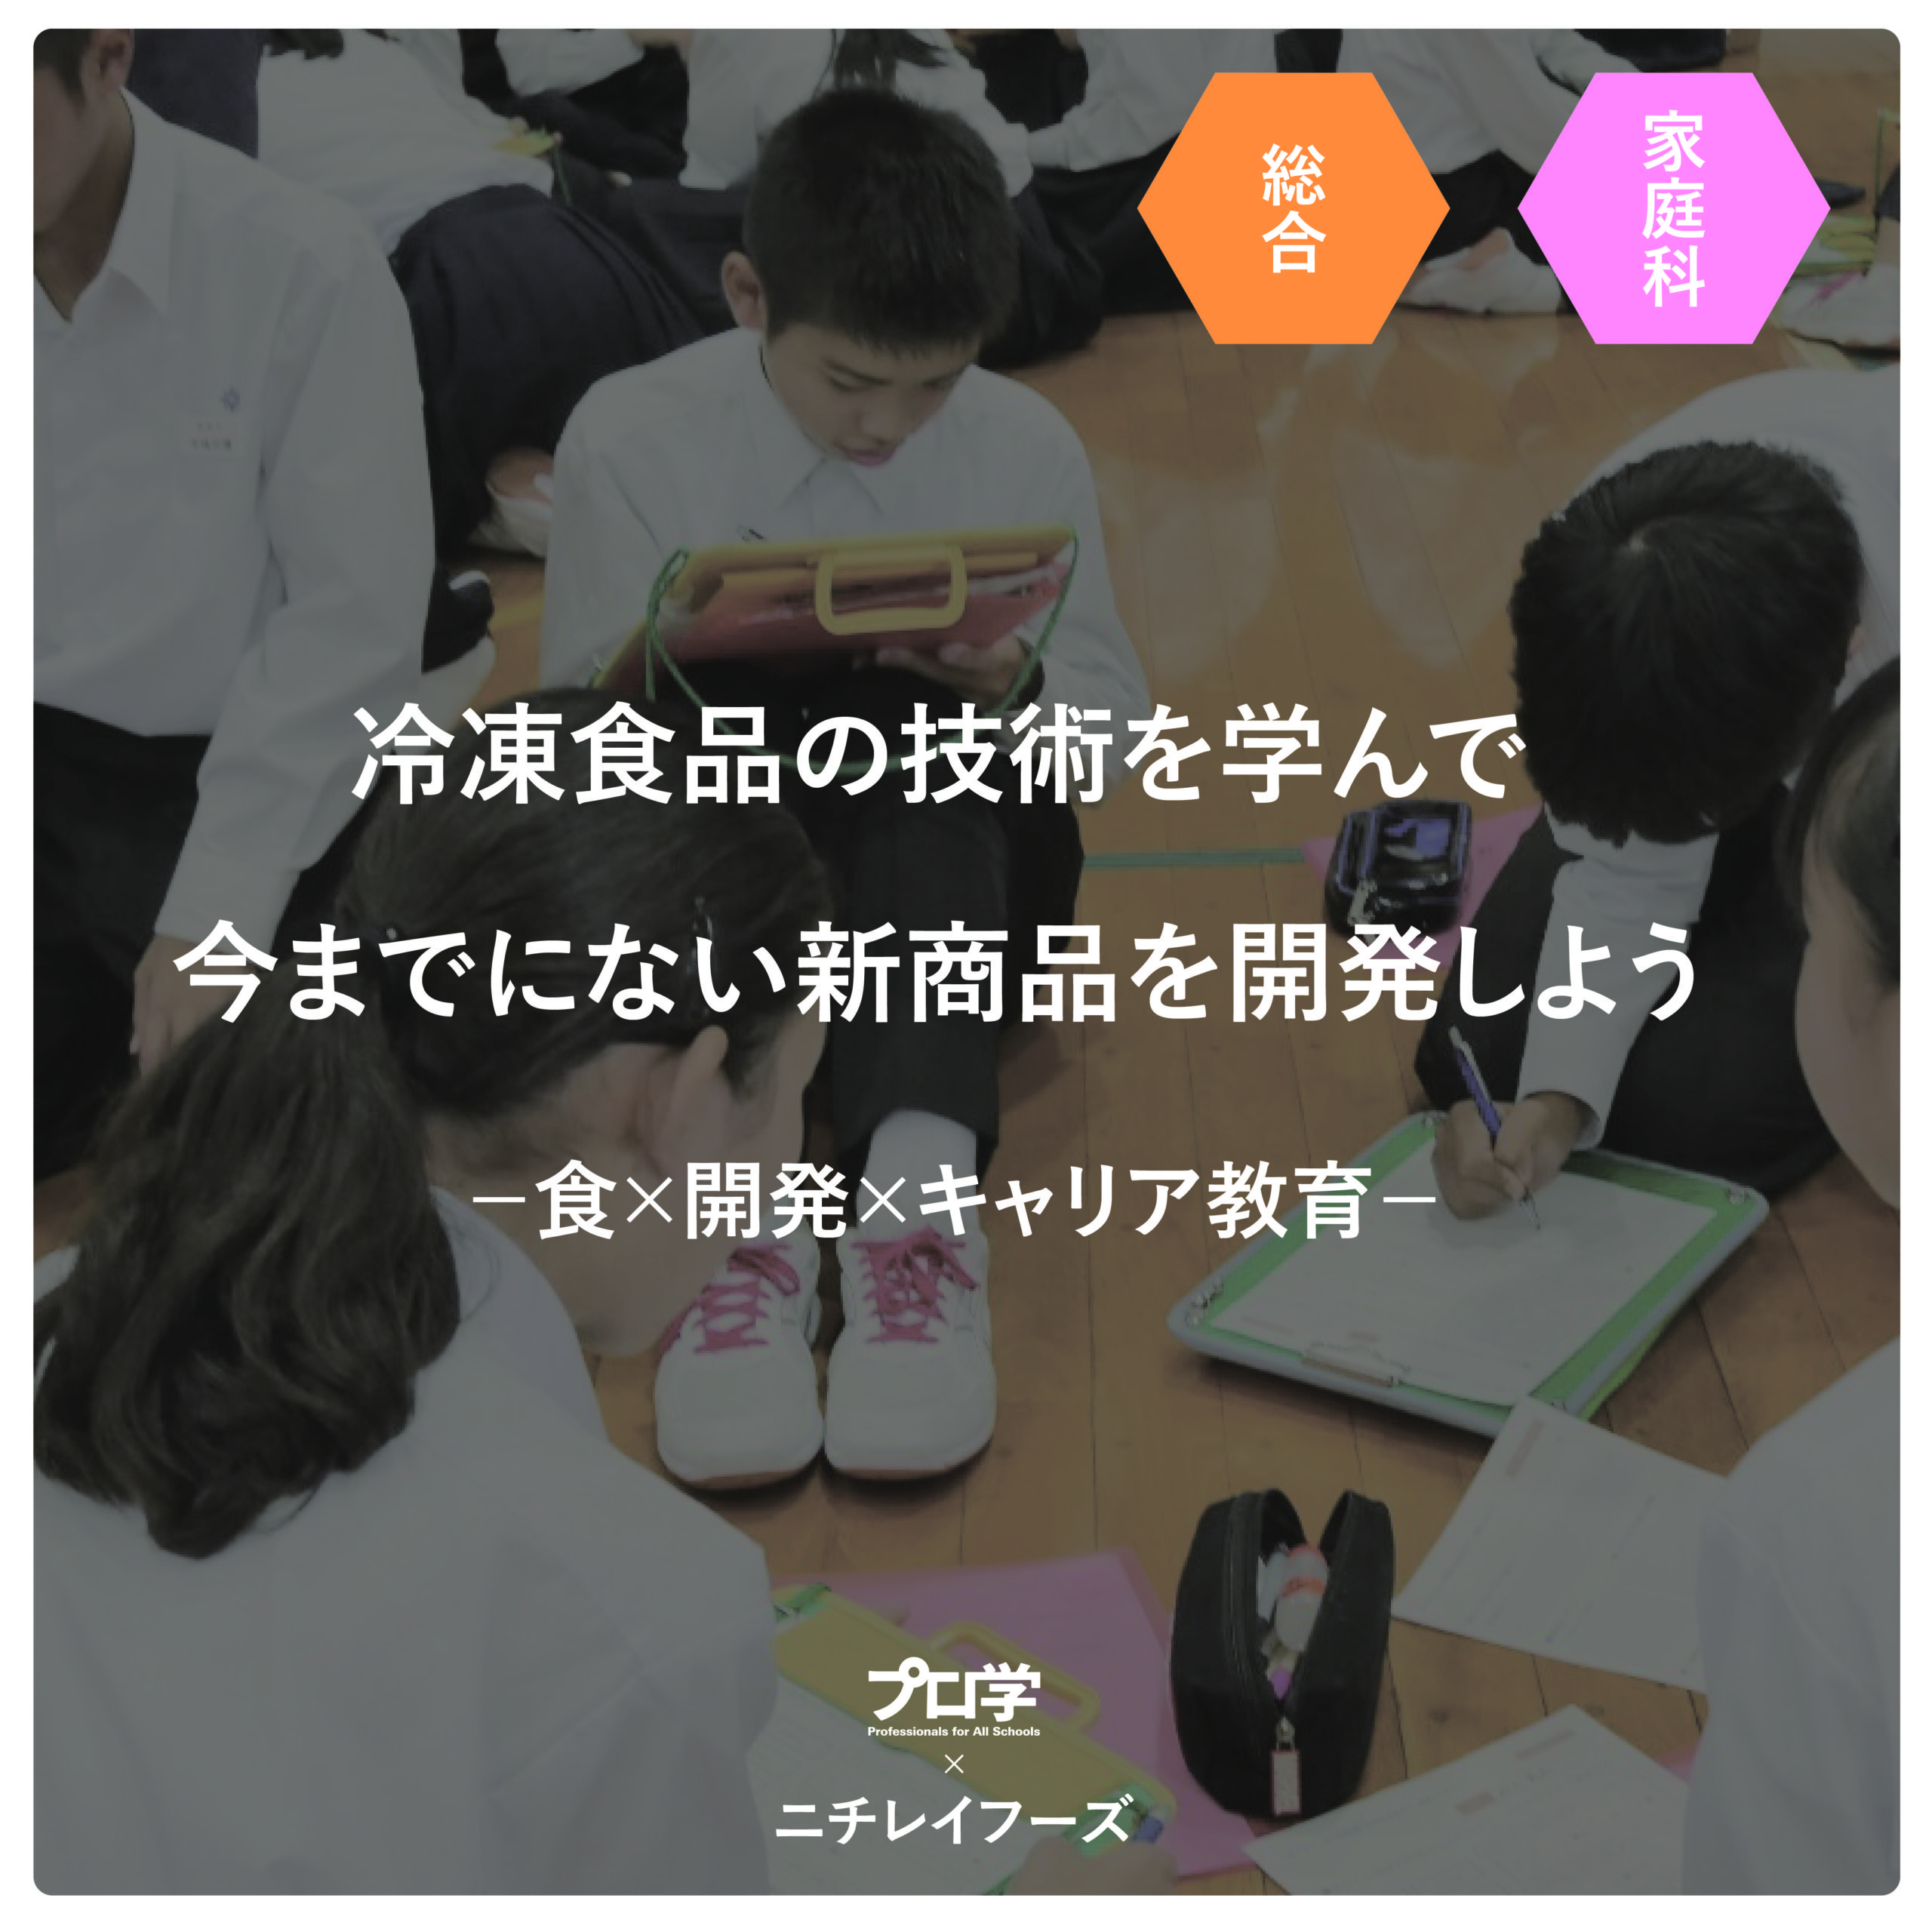 ニチレイフーズ株式会社と下田市立白浜小学校と行った遠隔授業の様子が、11月8日の伊豆新聞に掲載されました